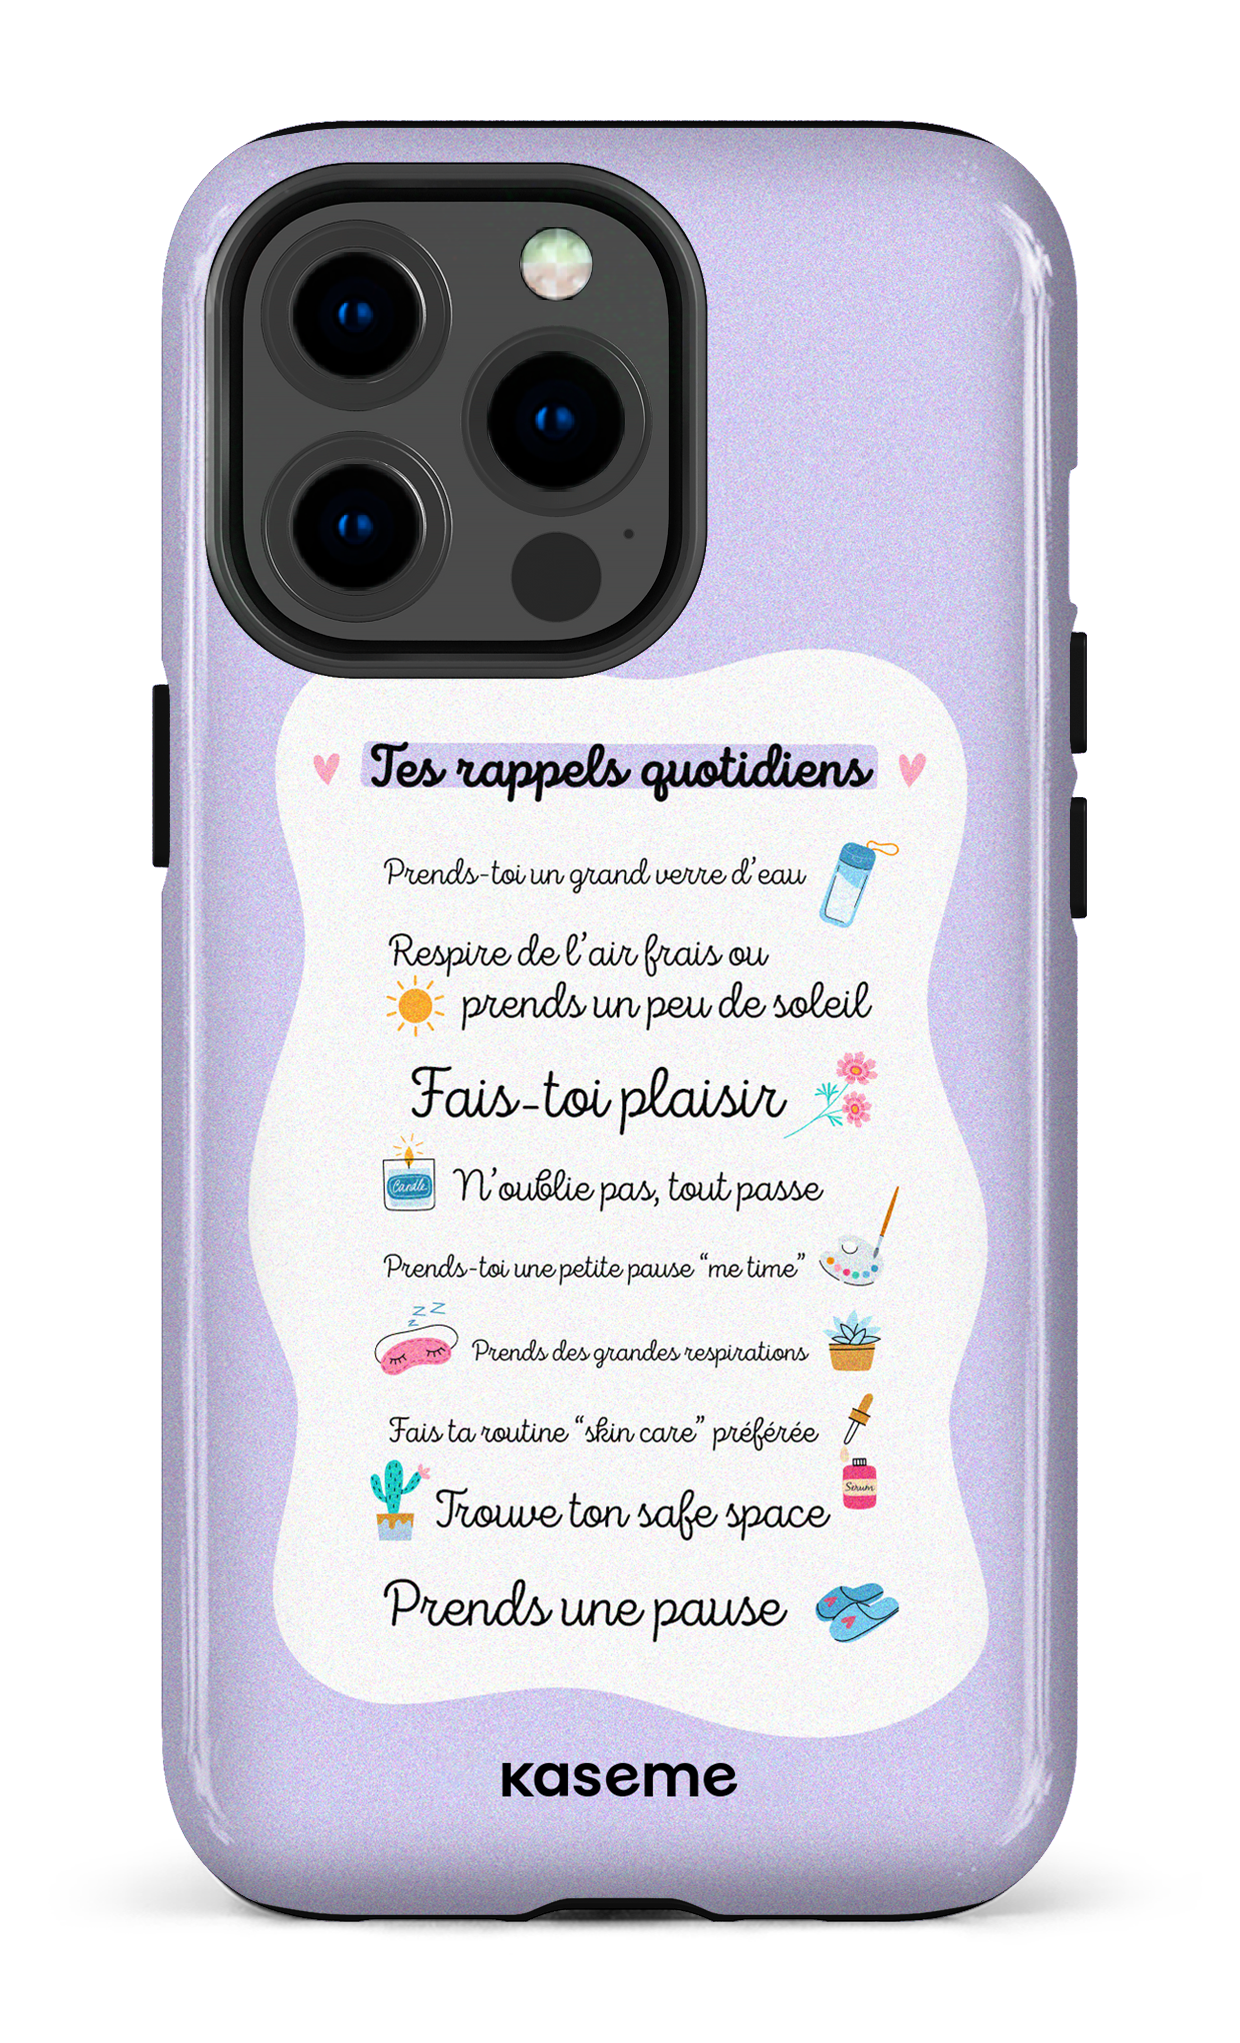 Tes rappels quotidiens purple - iPhone 13 Pro